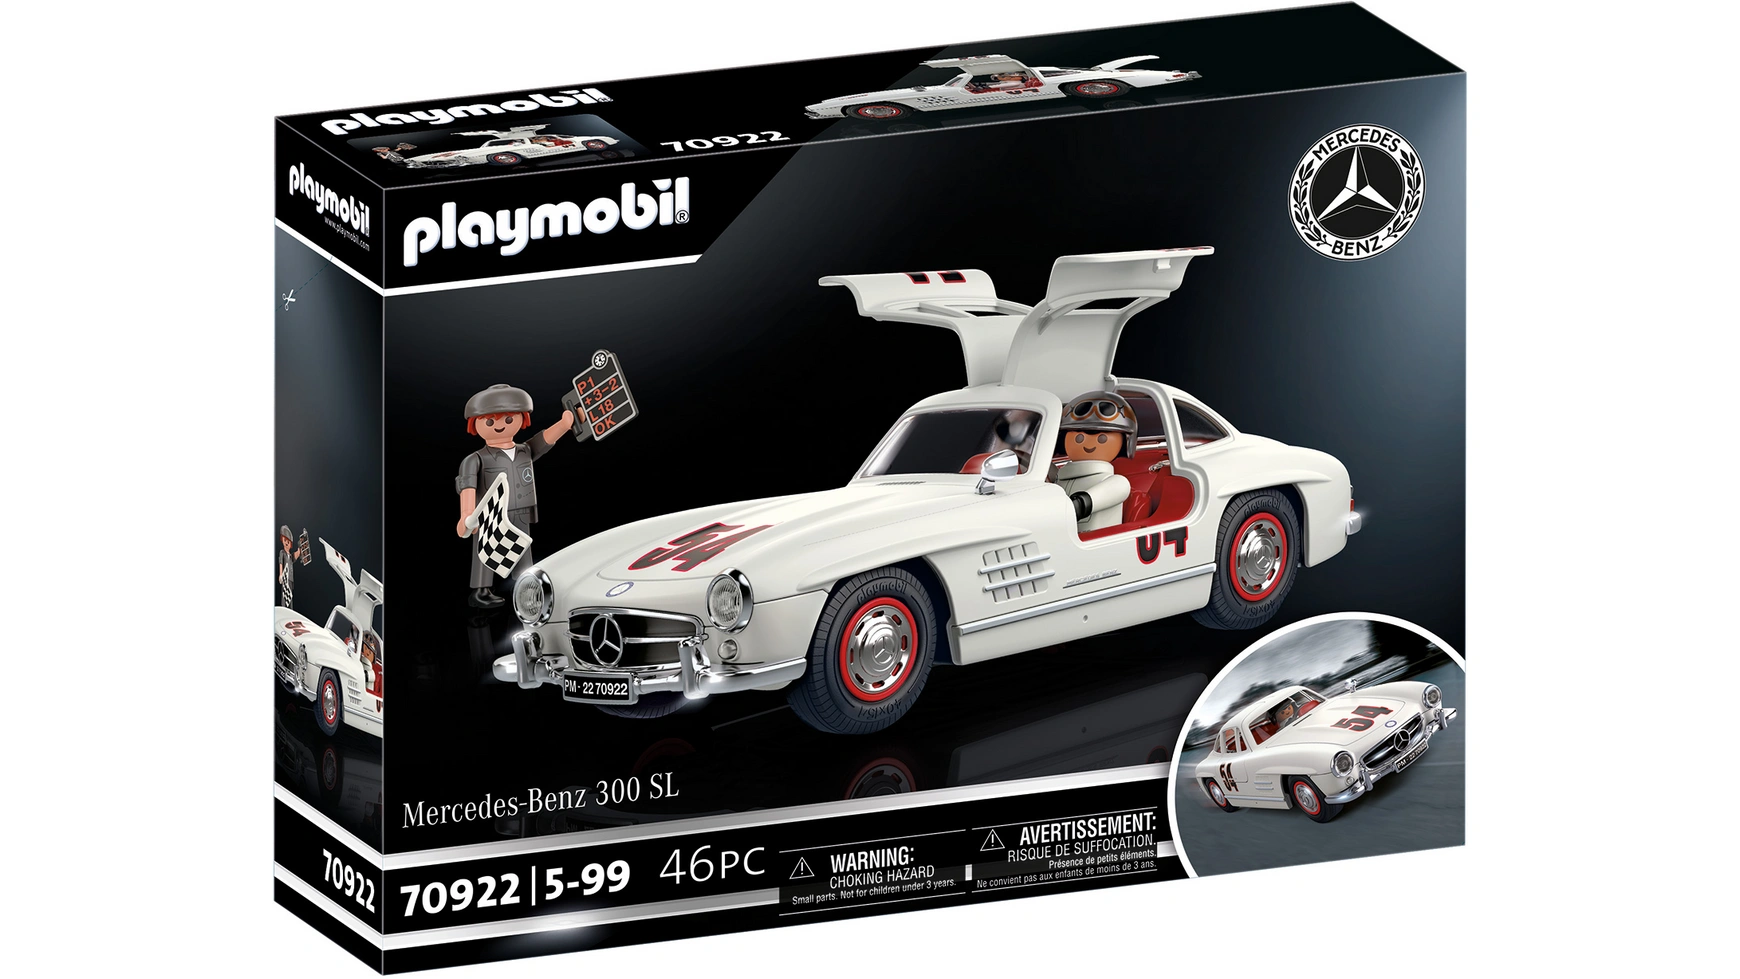 Mercedes-benz 300 sl Playmobil цена и фото